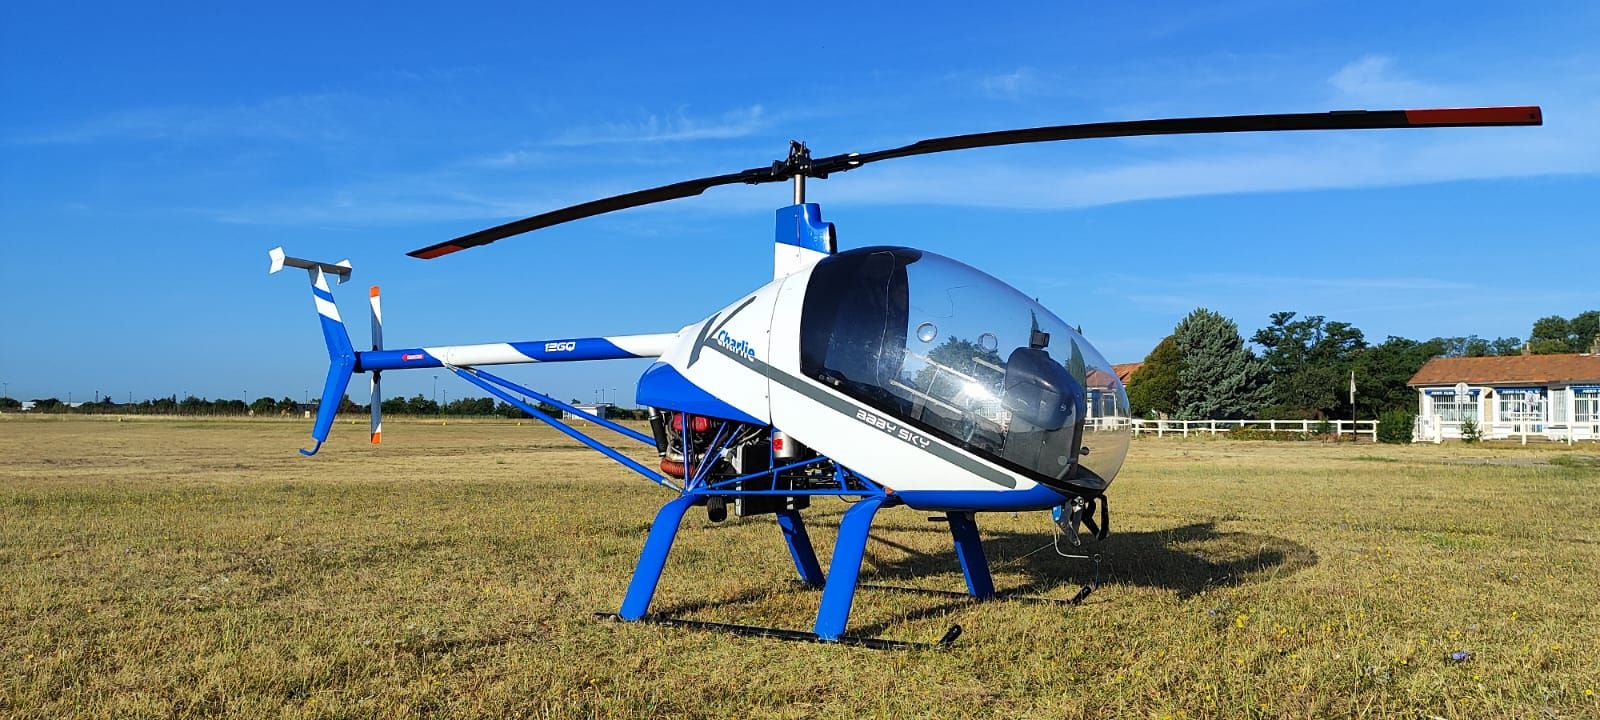 Ulm à vendre - Helicoptere - Kompress CH7 Classe 6